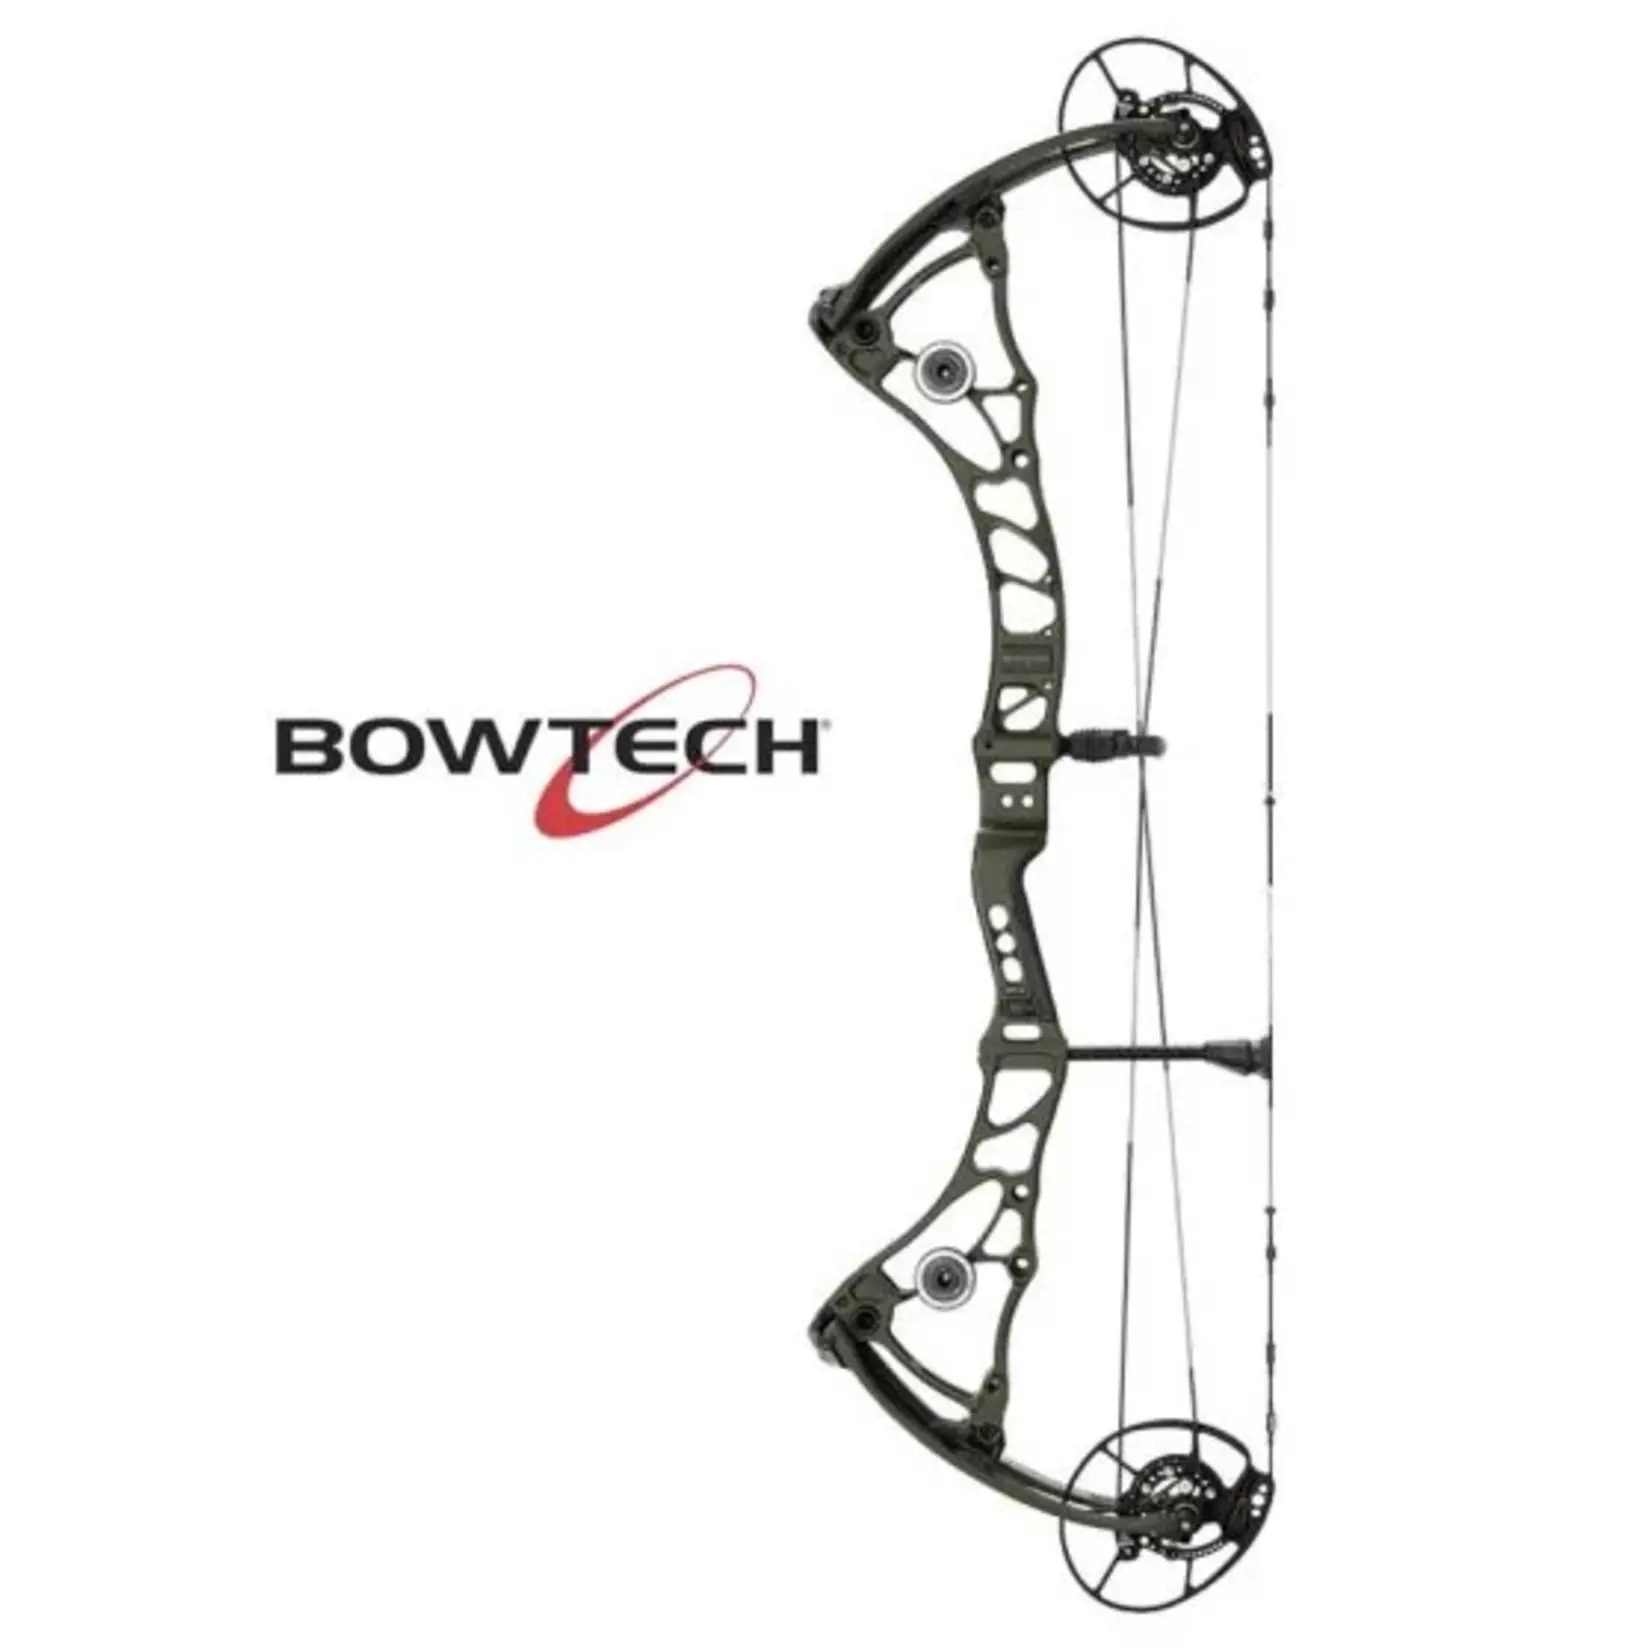 Bowtech Bowtech Core SR Bow RH 70# OD Green